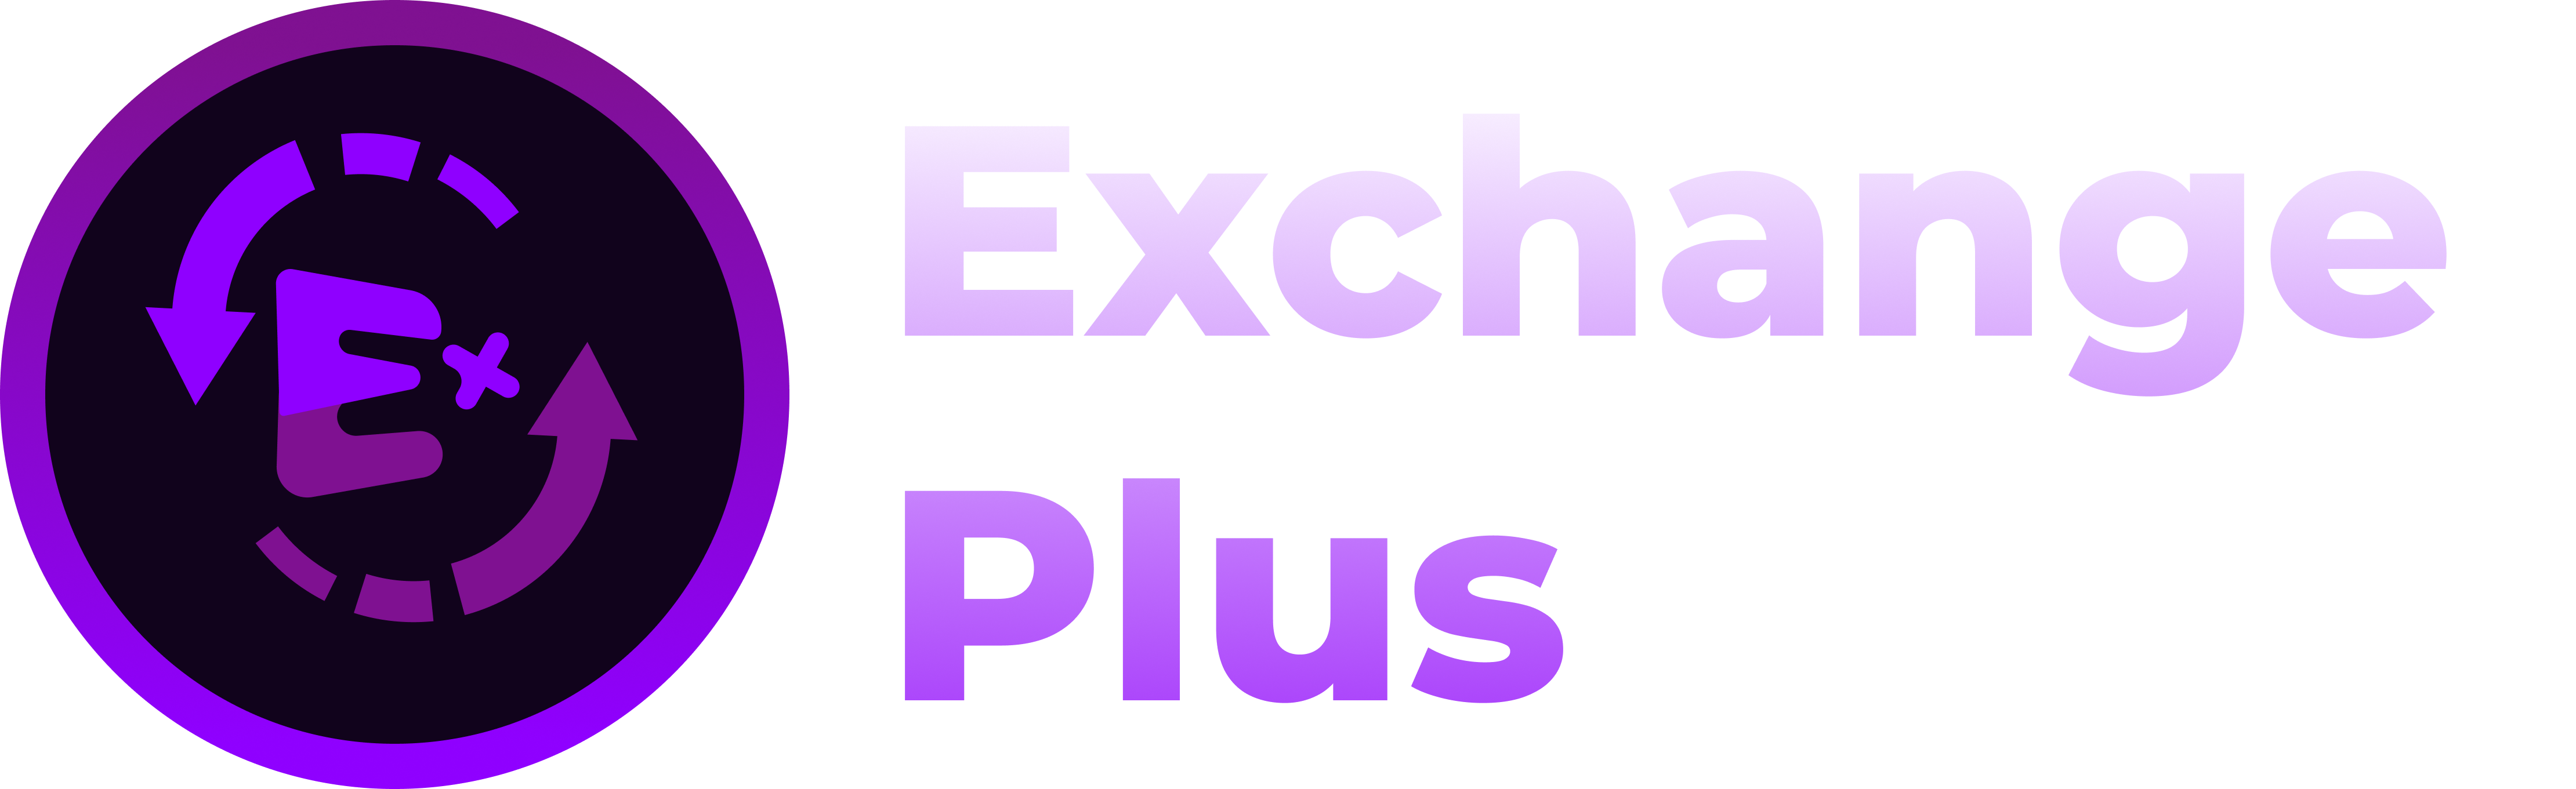 ExchangePlus